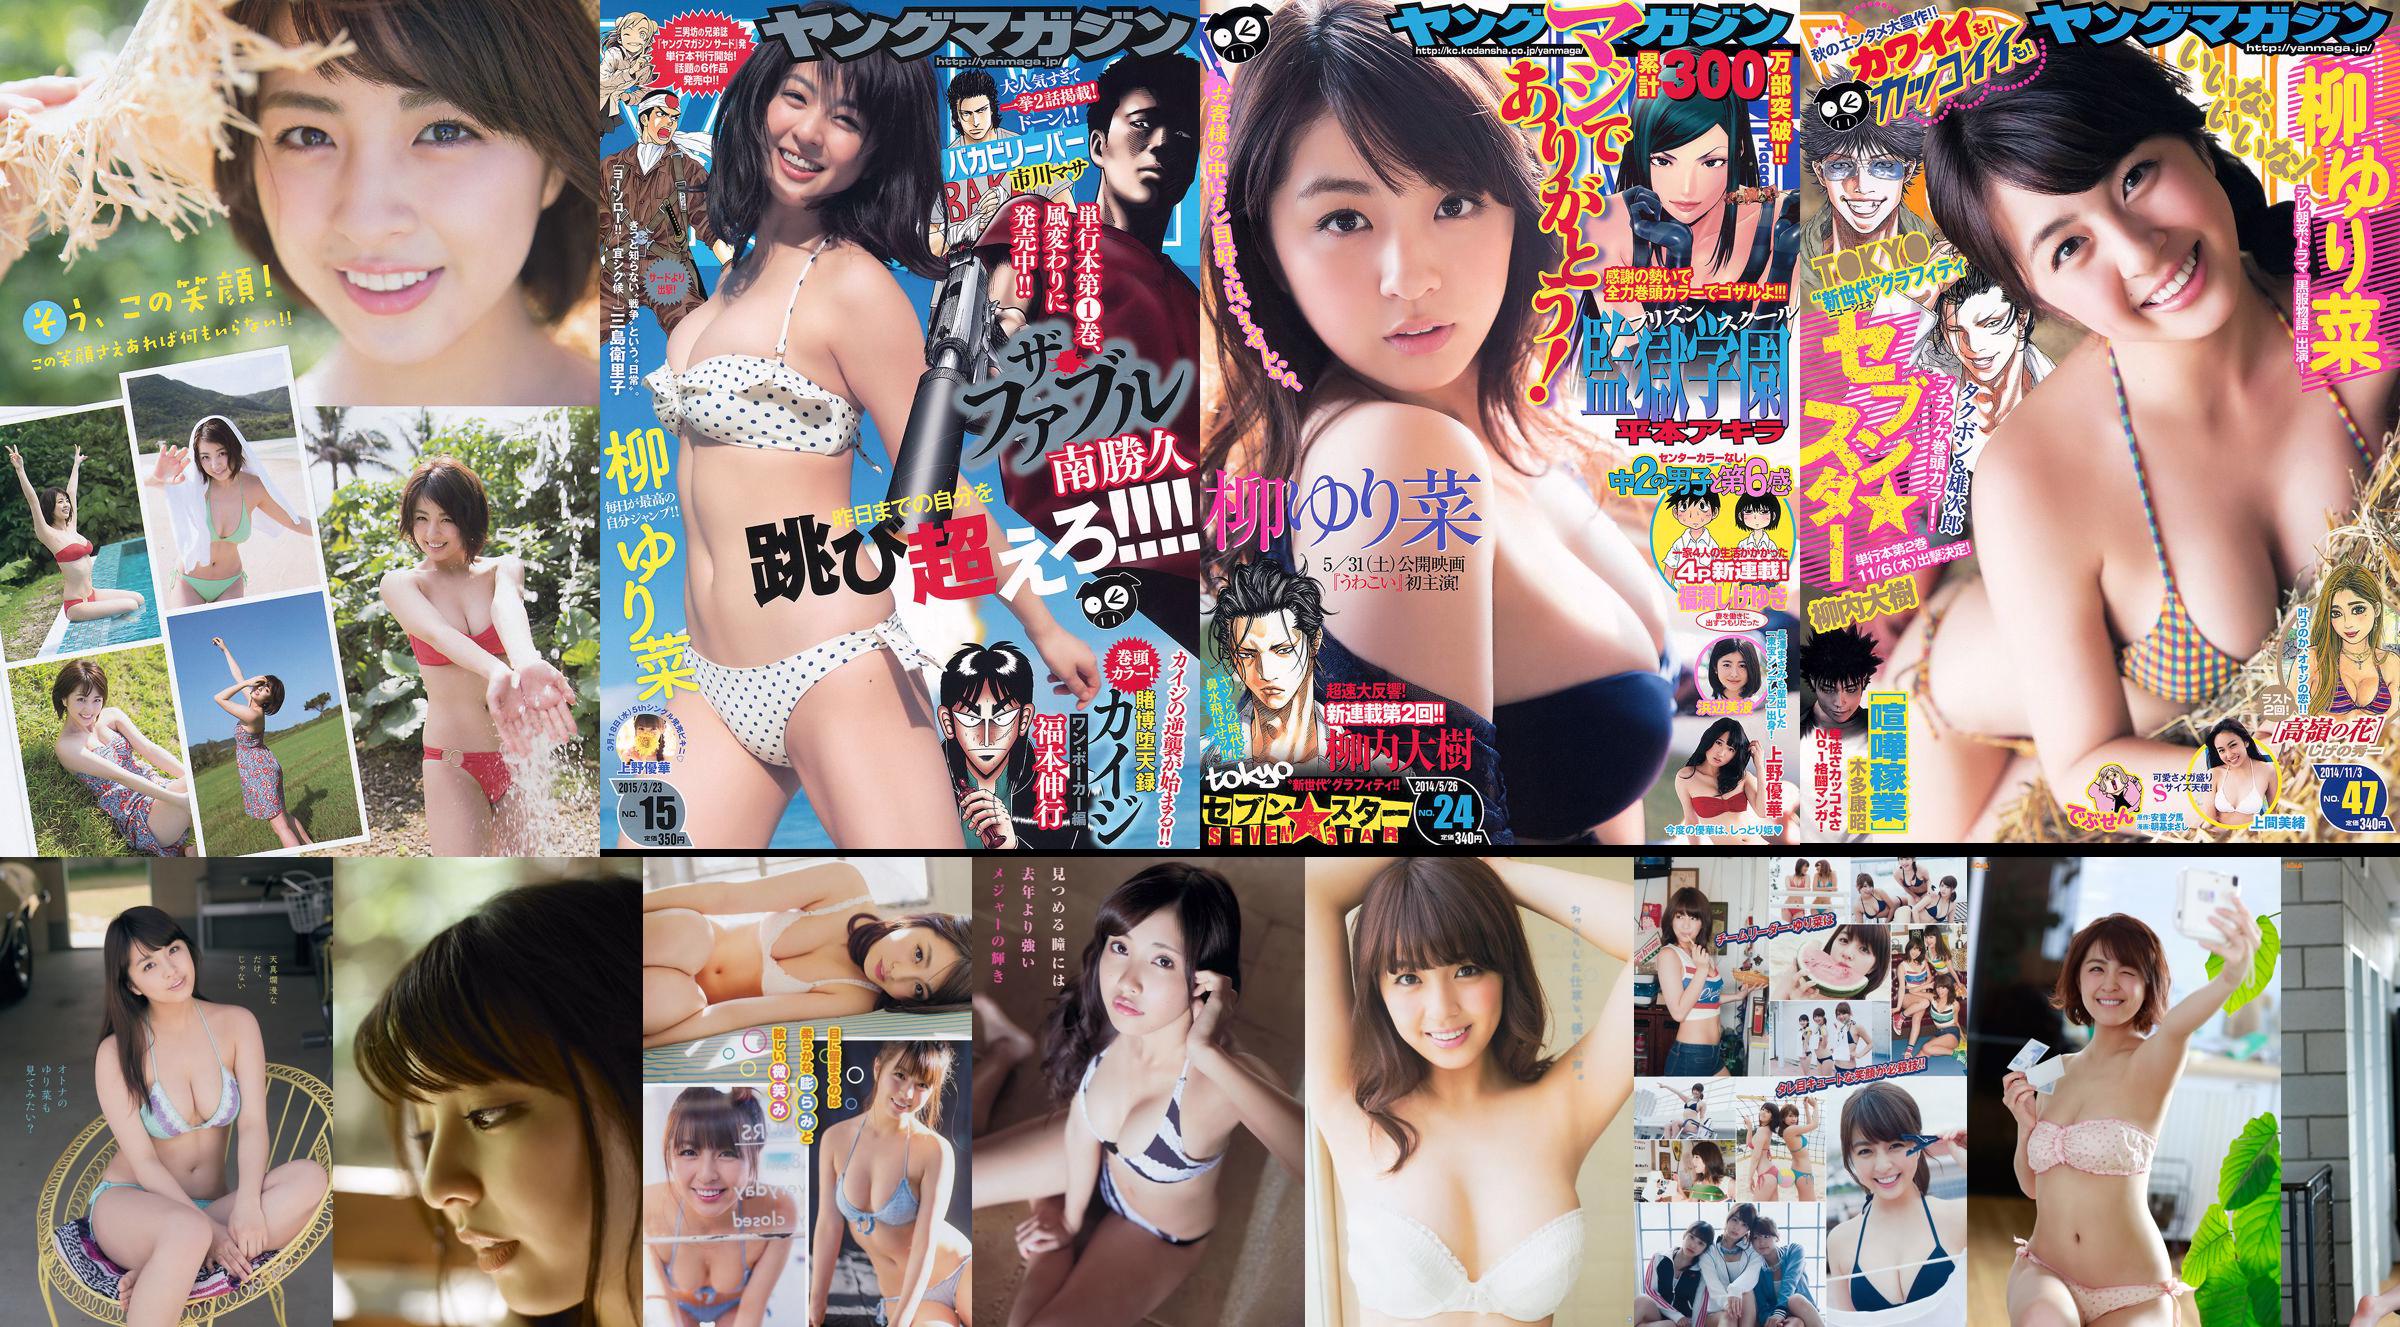 [Majalah Muda] Yurina Yanagi Hinako Sano 2014 No. 06 Foto No.447838 Halaman 1